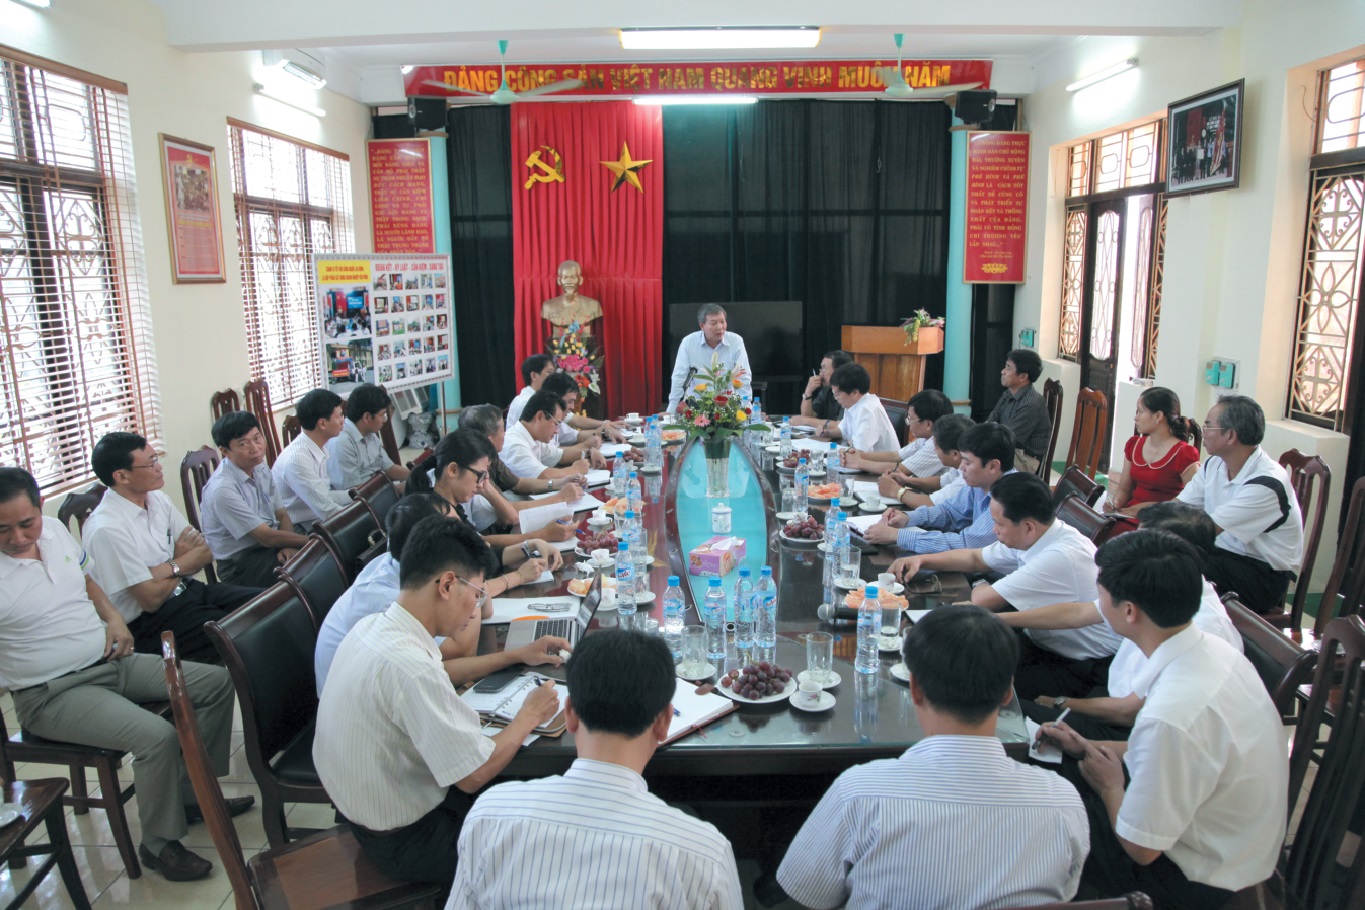 Đồng chí Bí thư Đảng ủy, Chủ tịch HĐTV ĐSVN làm việc tại các đơn vị khu vực Nam Định